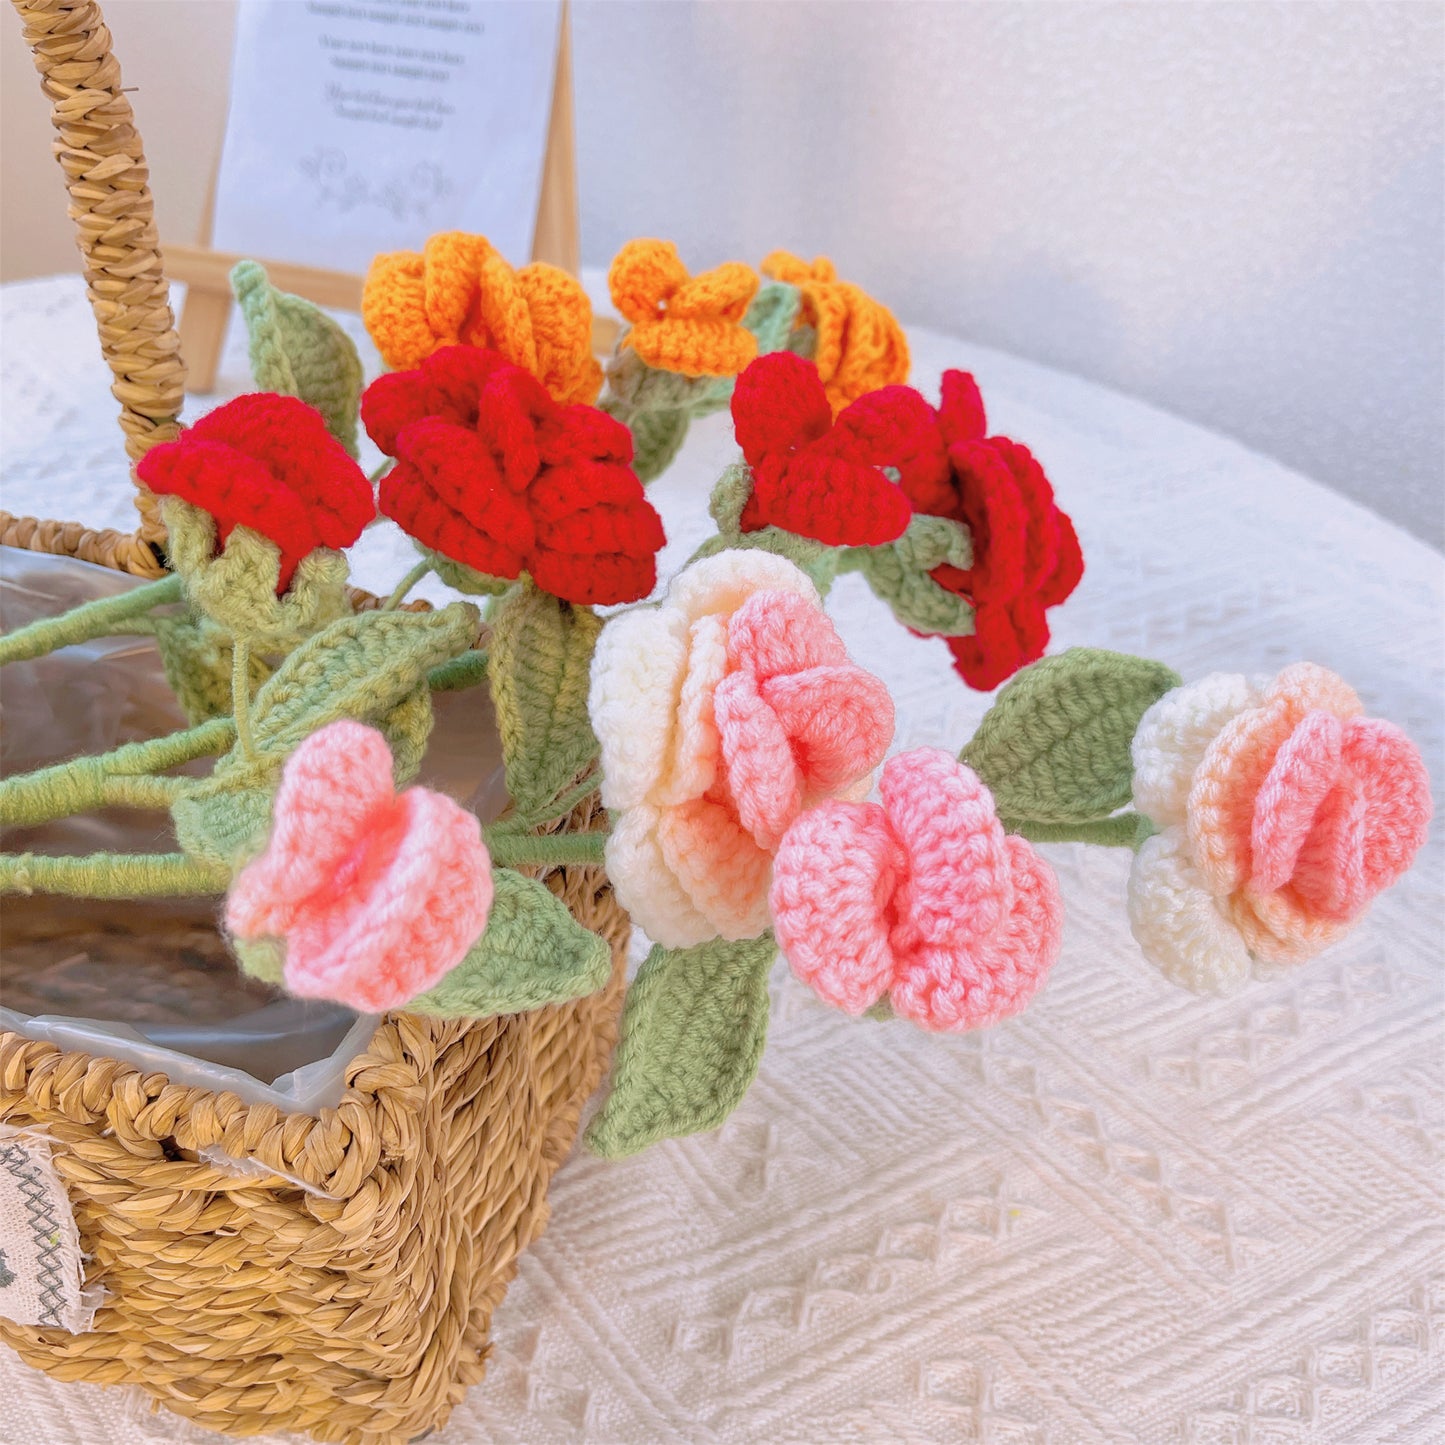 Rose Elegance : Piquet de fleur de rose au crochet fabriqué à la main pour une décoration de jardin romantique